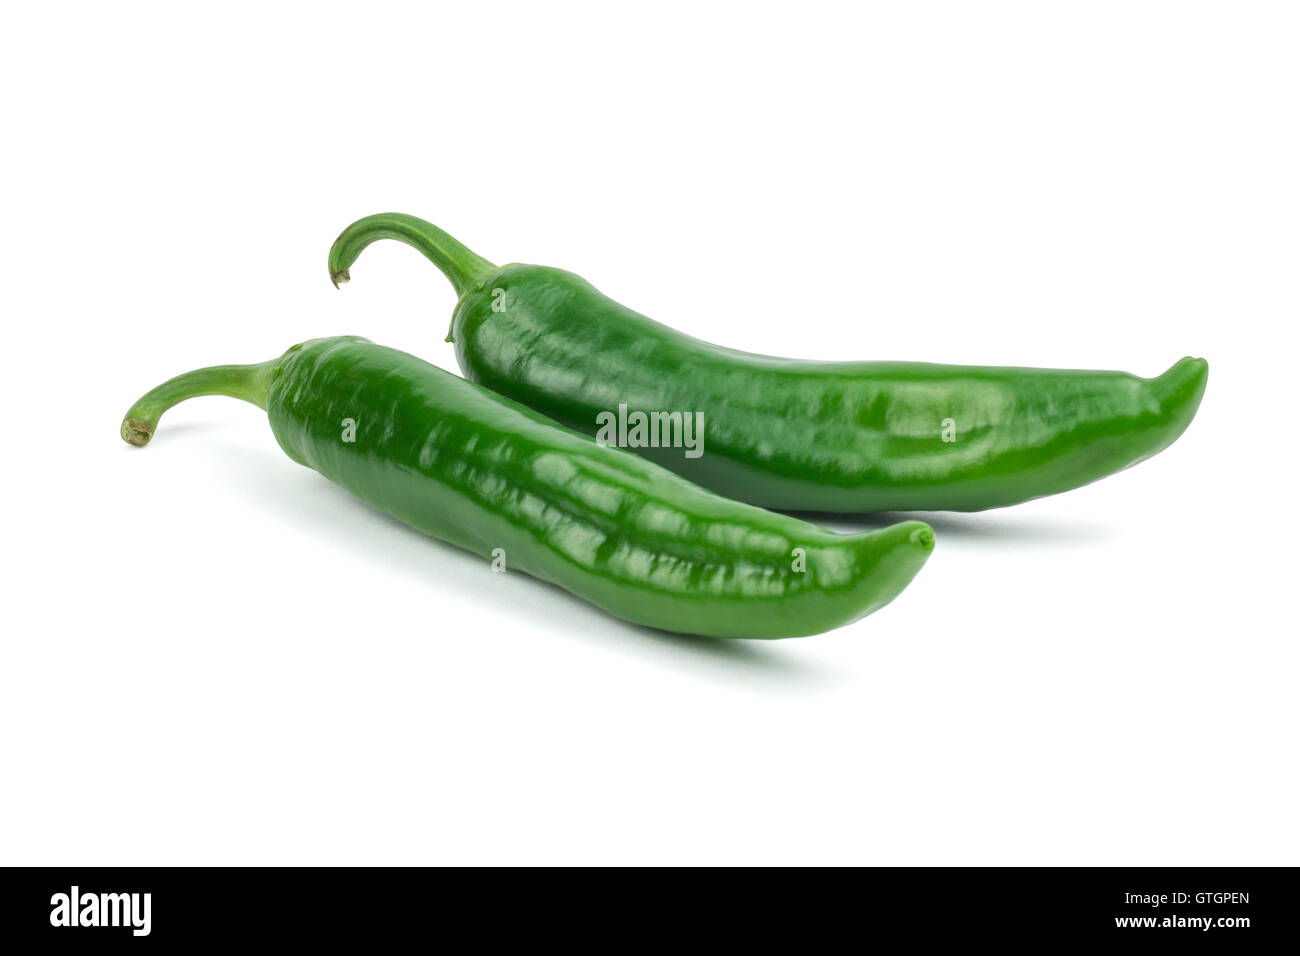 Hot pepe verde/s isolati su sfondo bianco. Percorso di clipping incluso in formato jpeg. Foto Stock